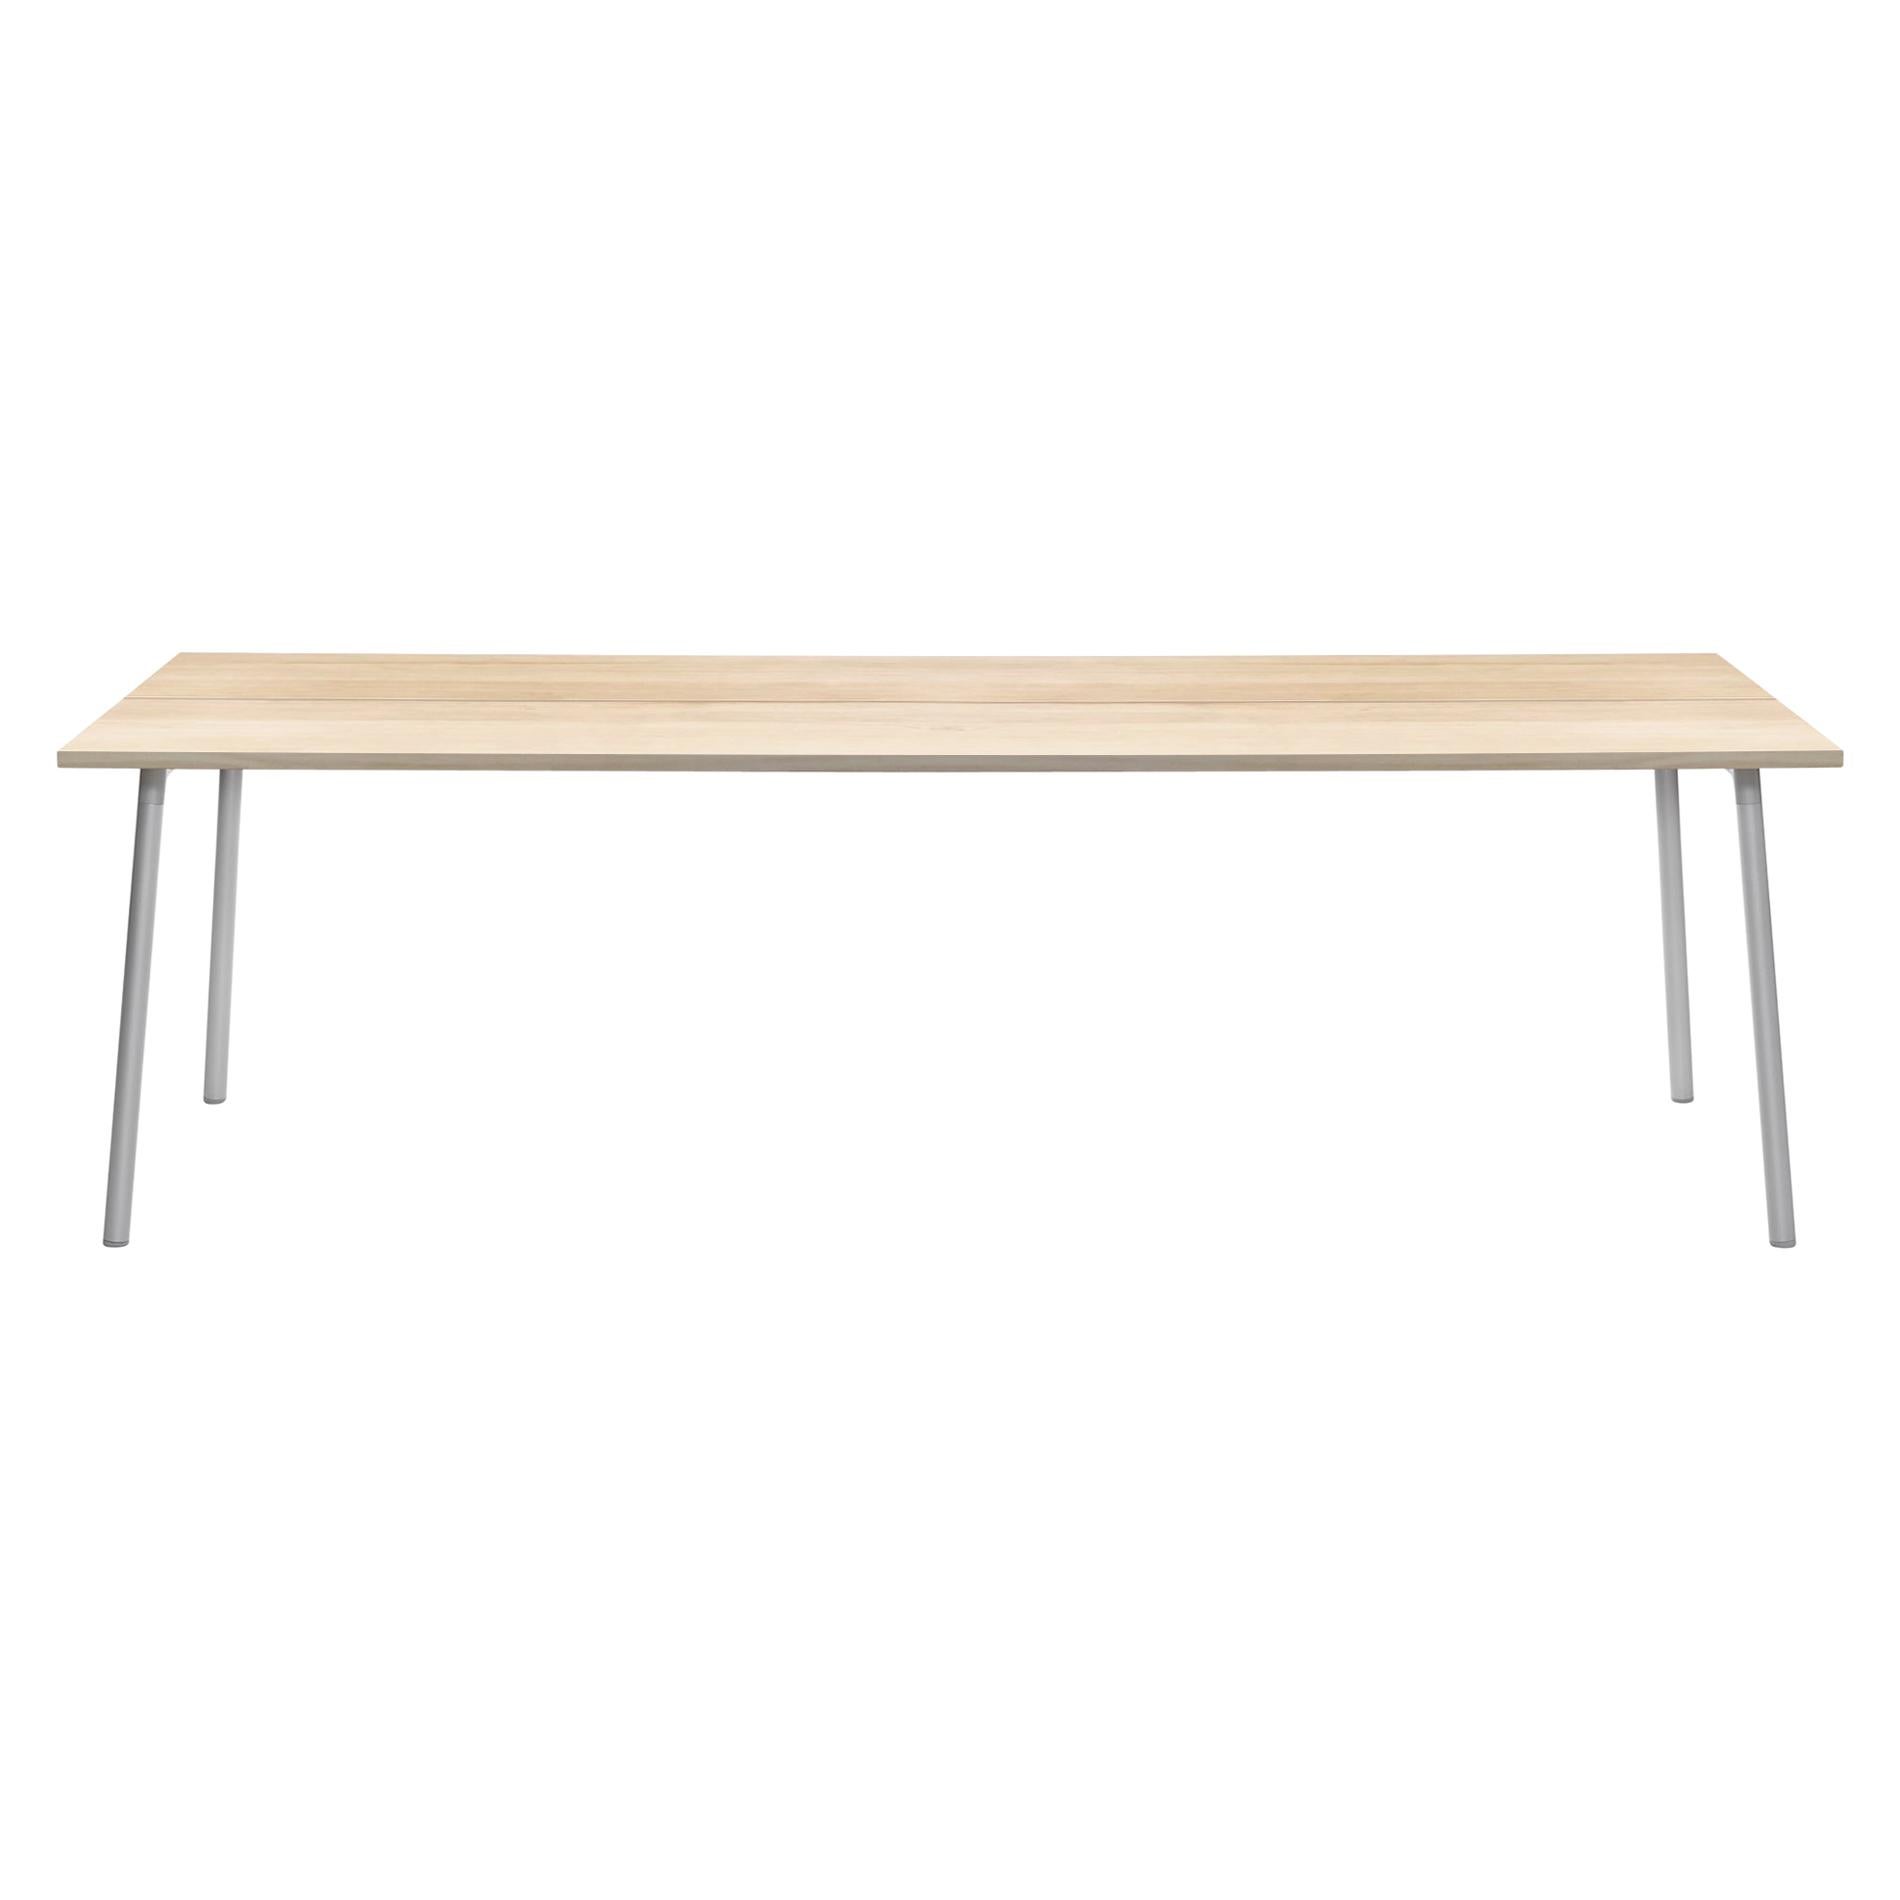 Table Emeco Run 243,84 cm avec cadre en aluminium et plateau en bois par Sam Hecht et Kim Colin